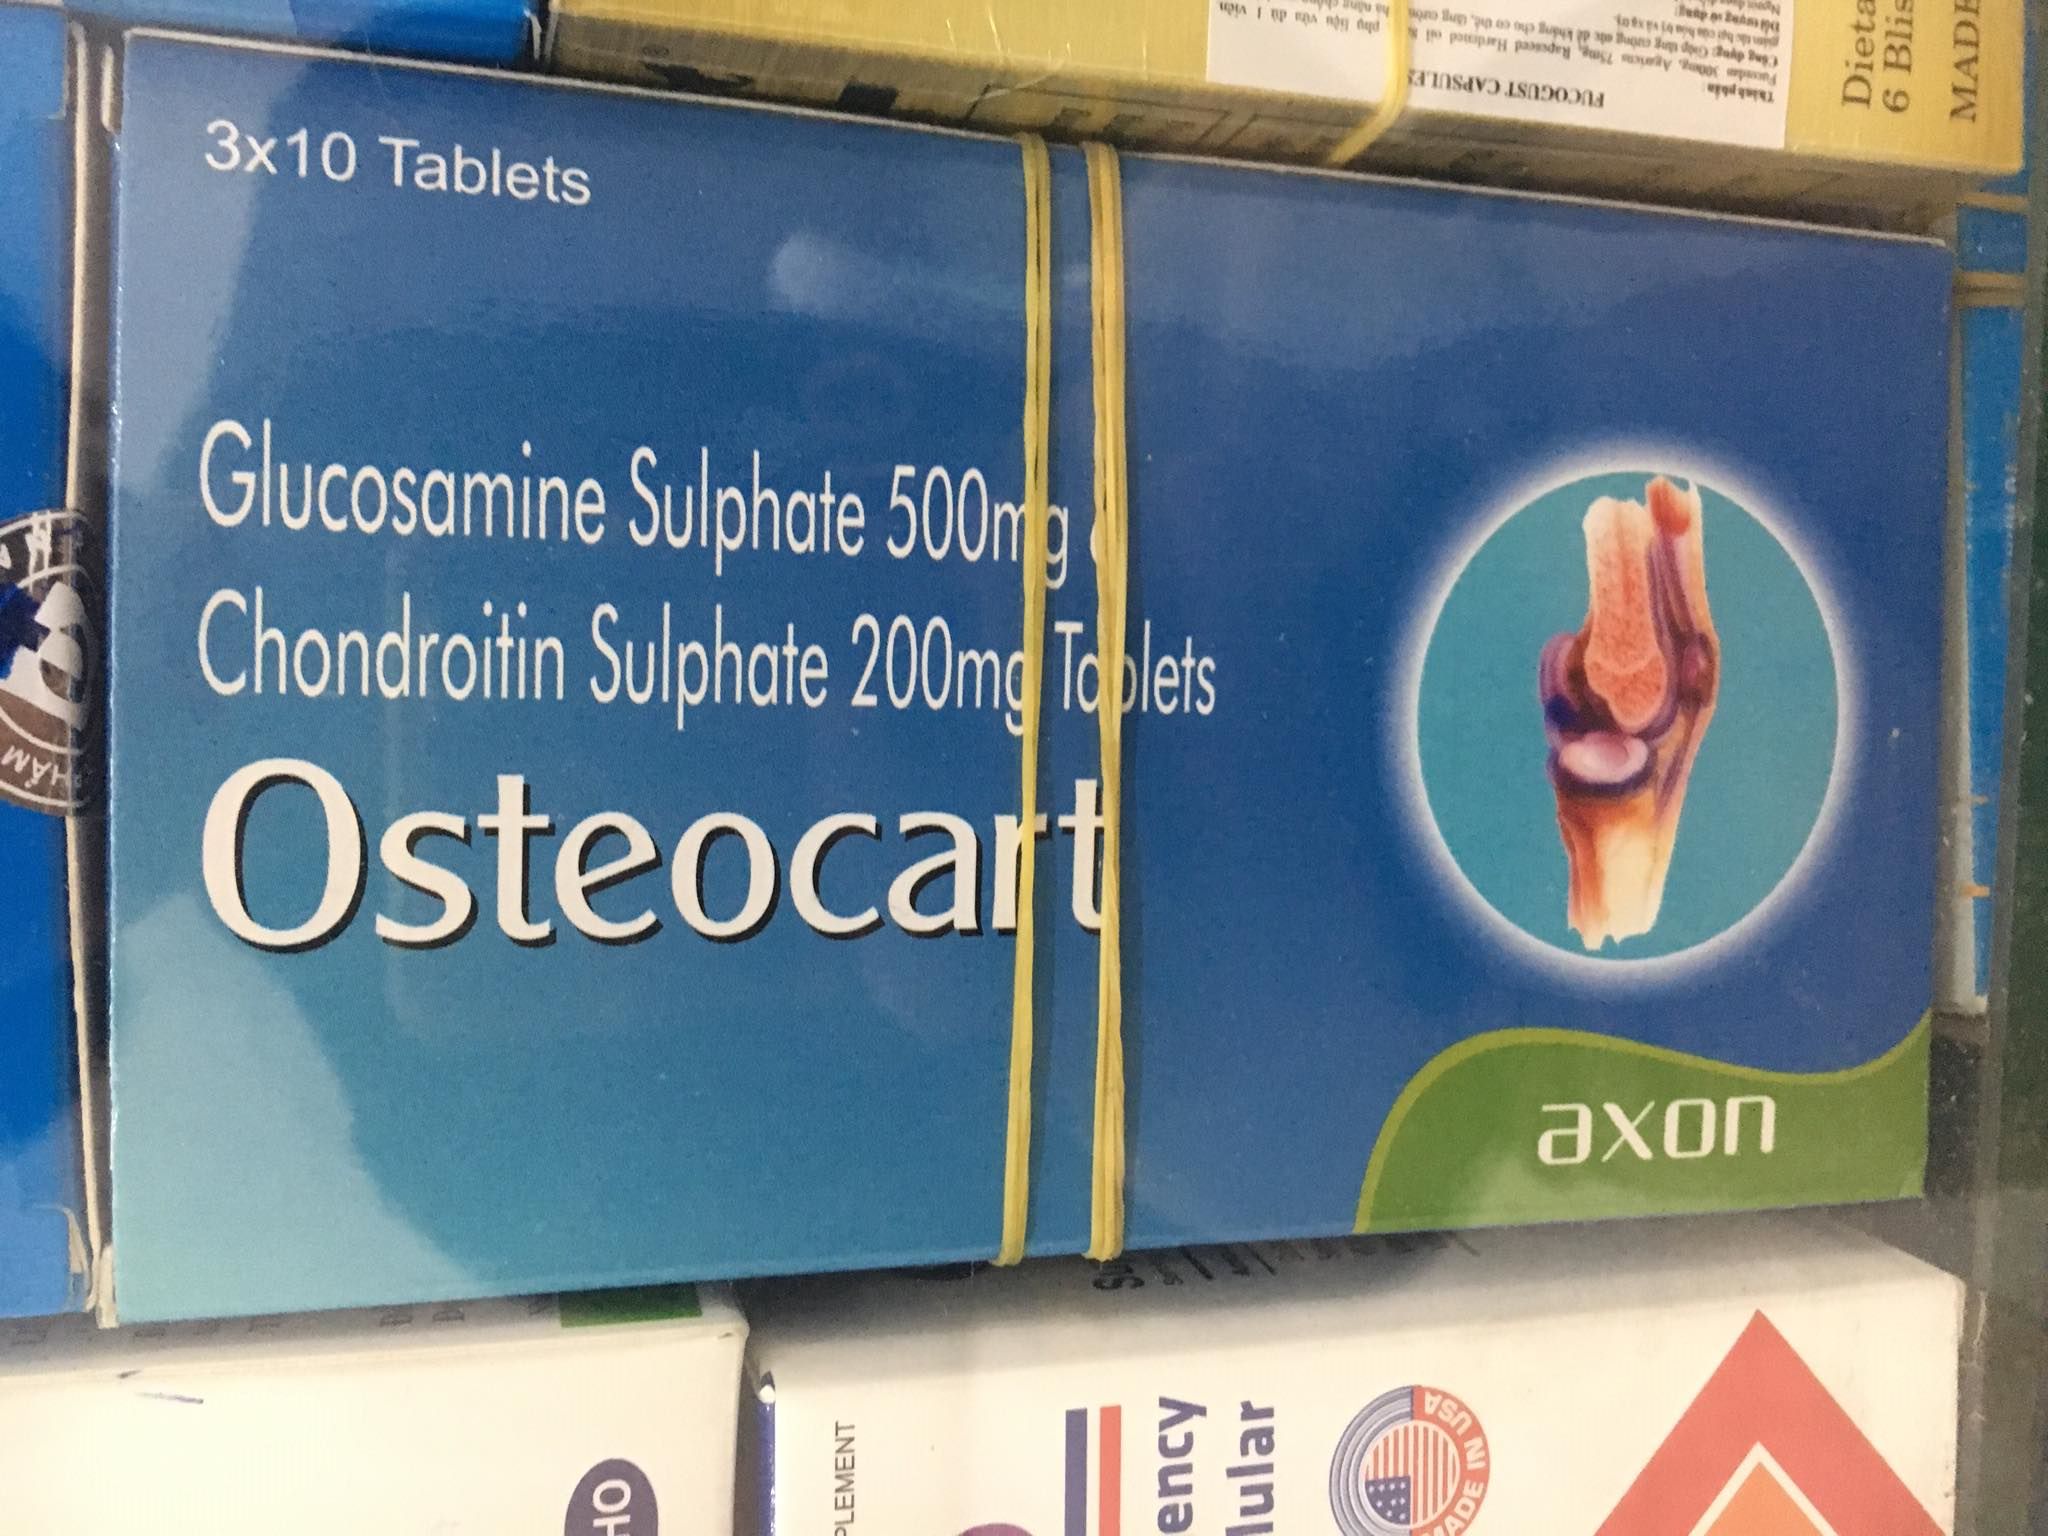 Osteocart